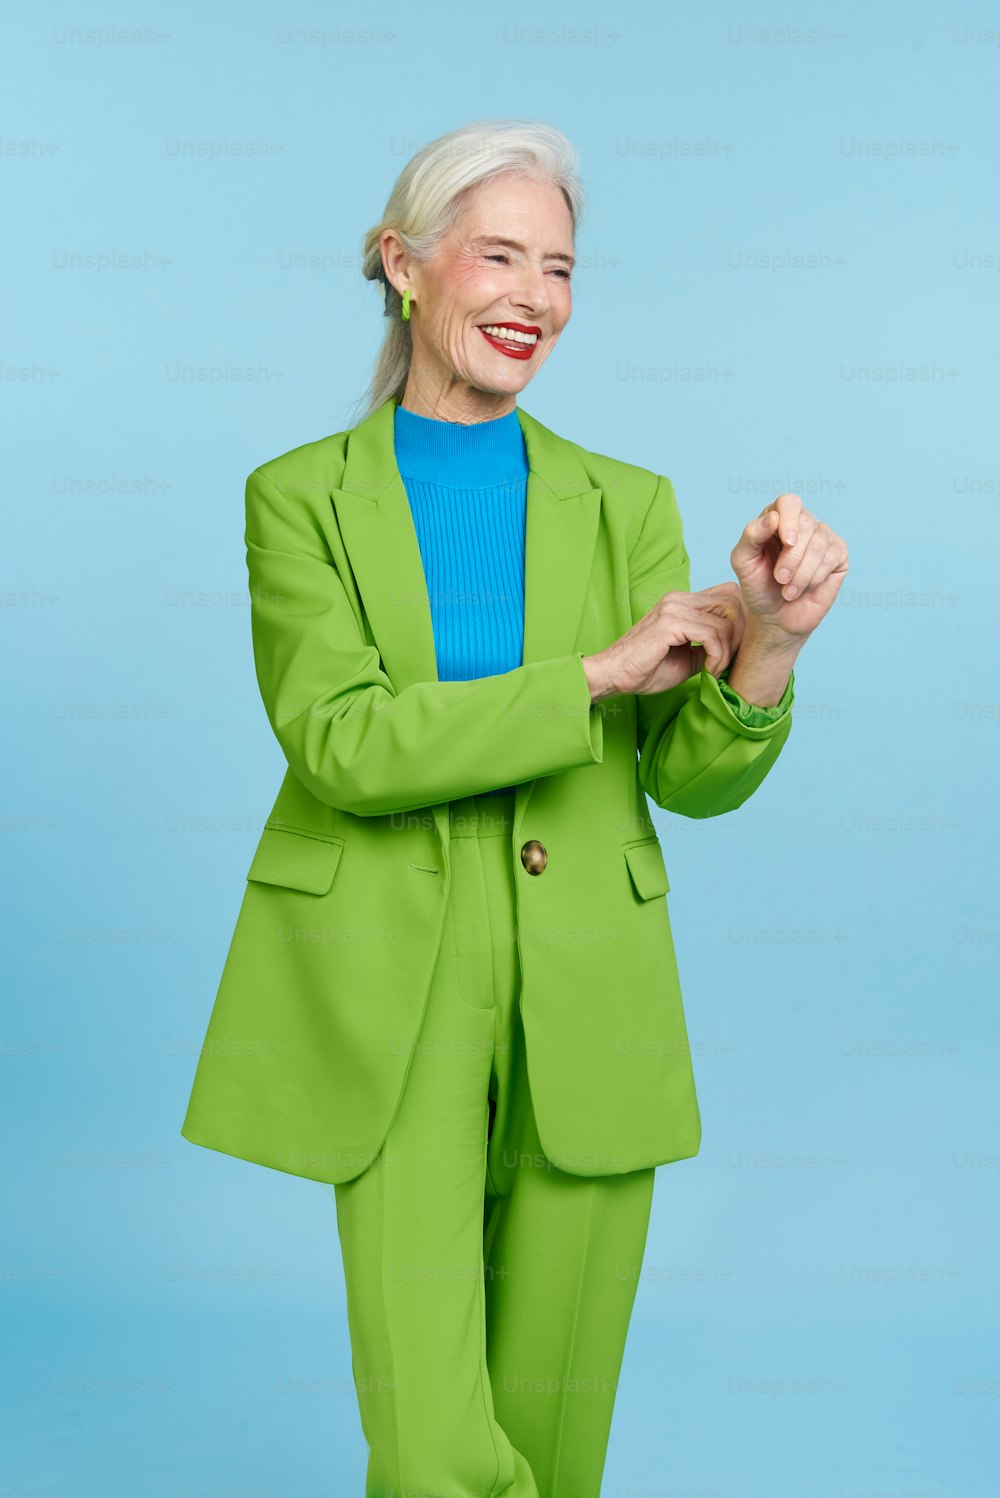 Una mujer con traje verde y camisa azul